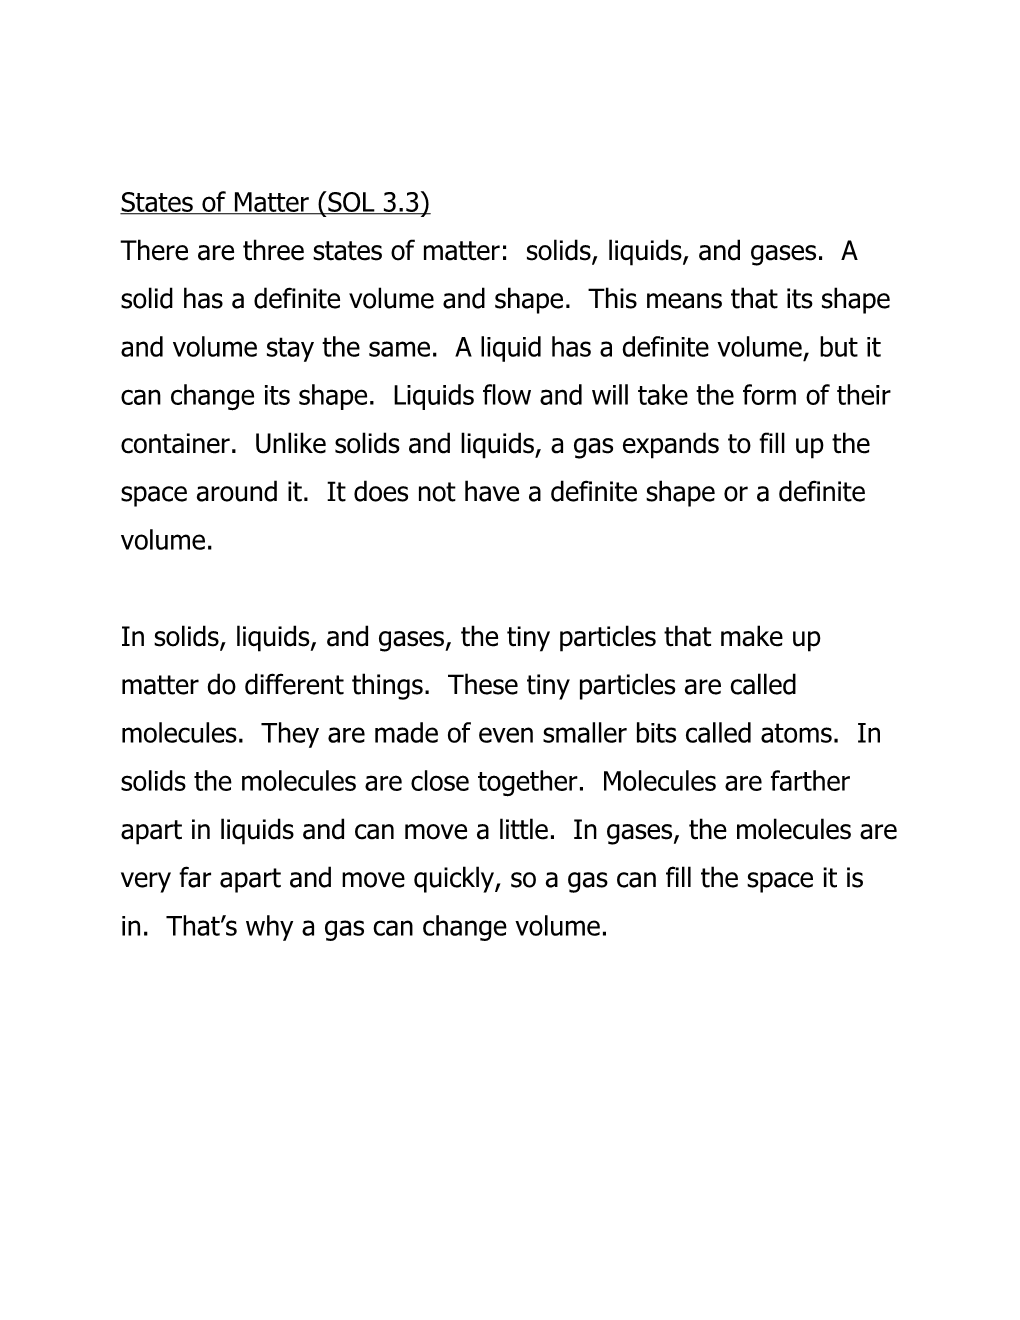 Describing Matter (SOL 3.3)